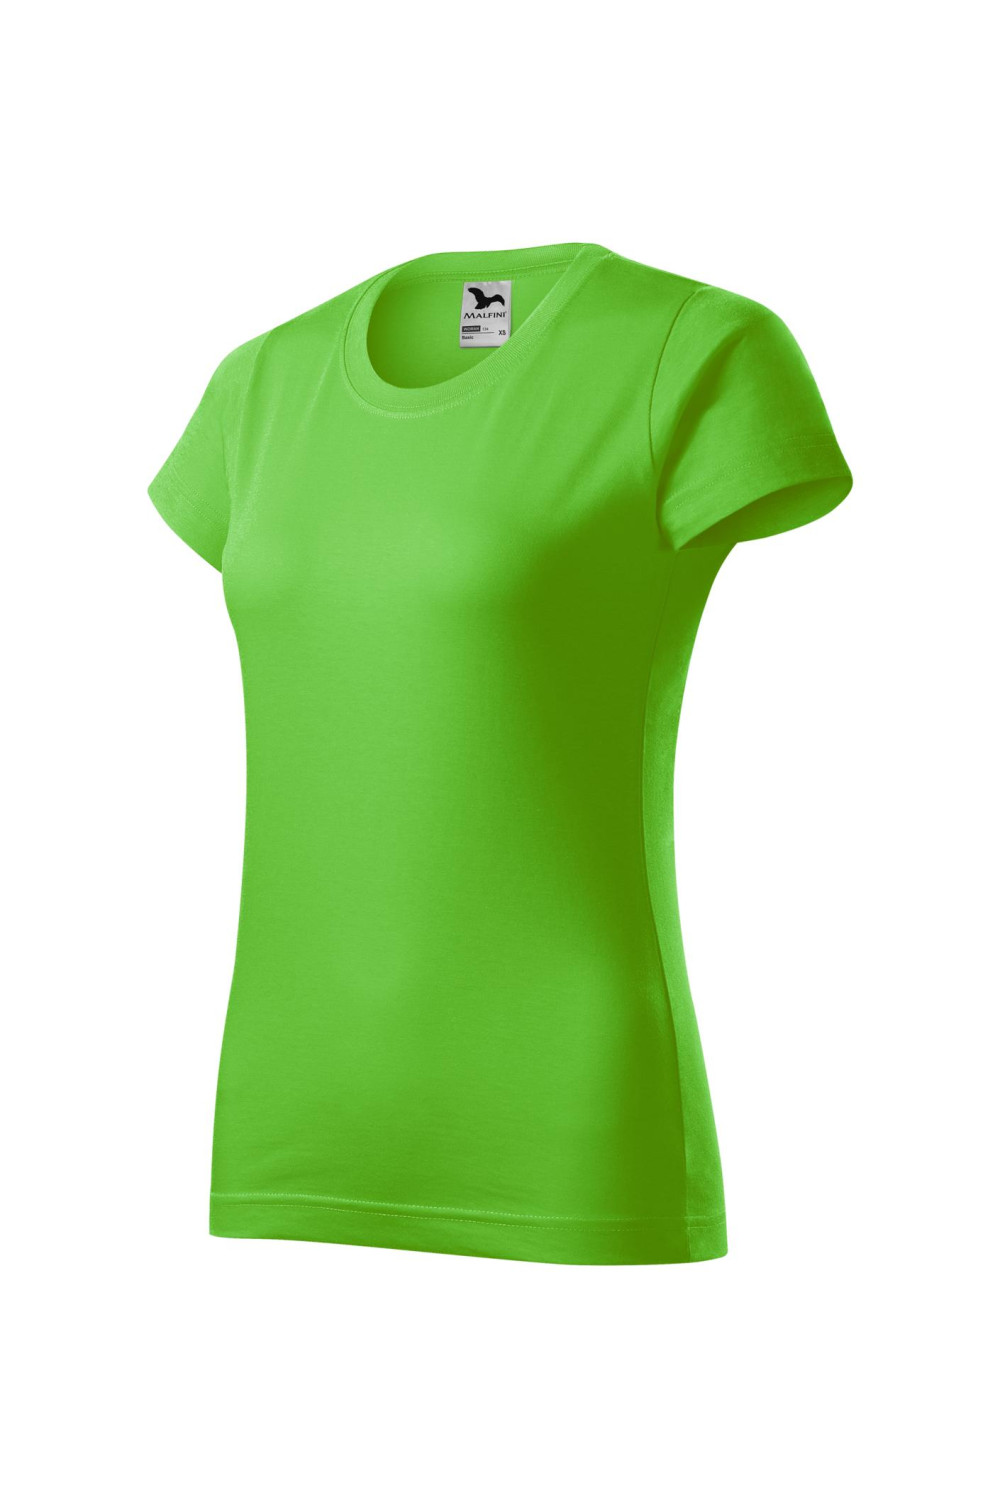 BASIC 134 MALFINI Koszulka damska 100% bawełna t-shirt green apple